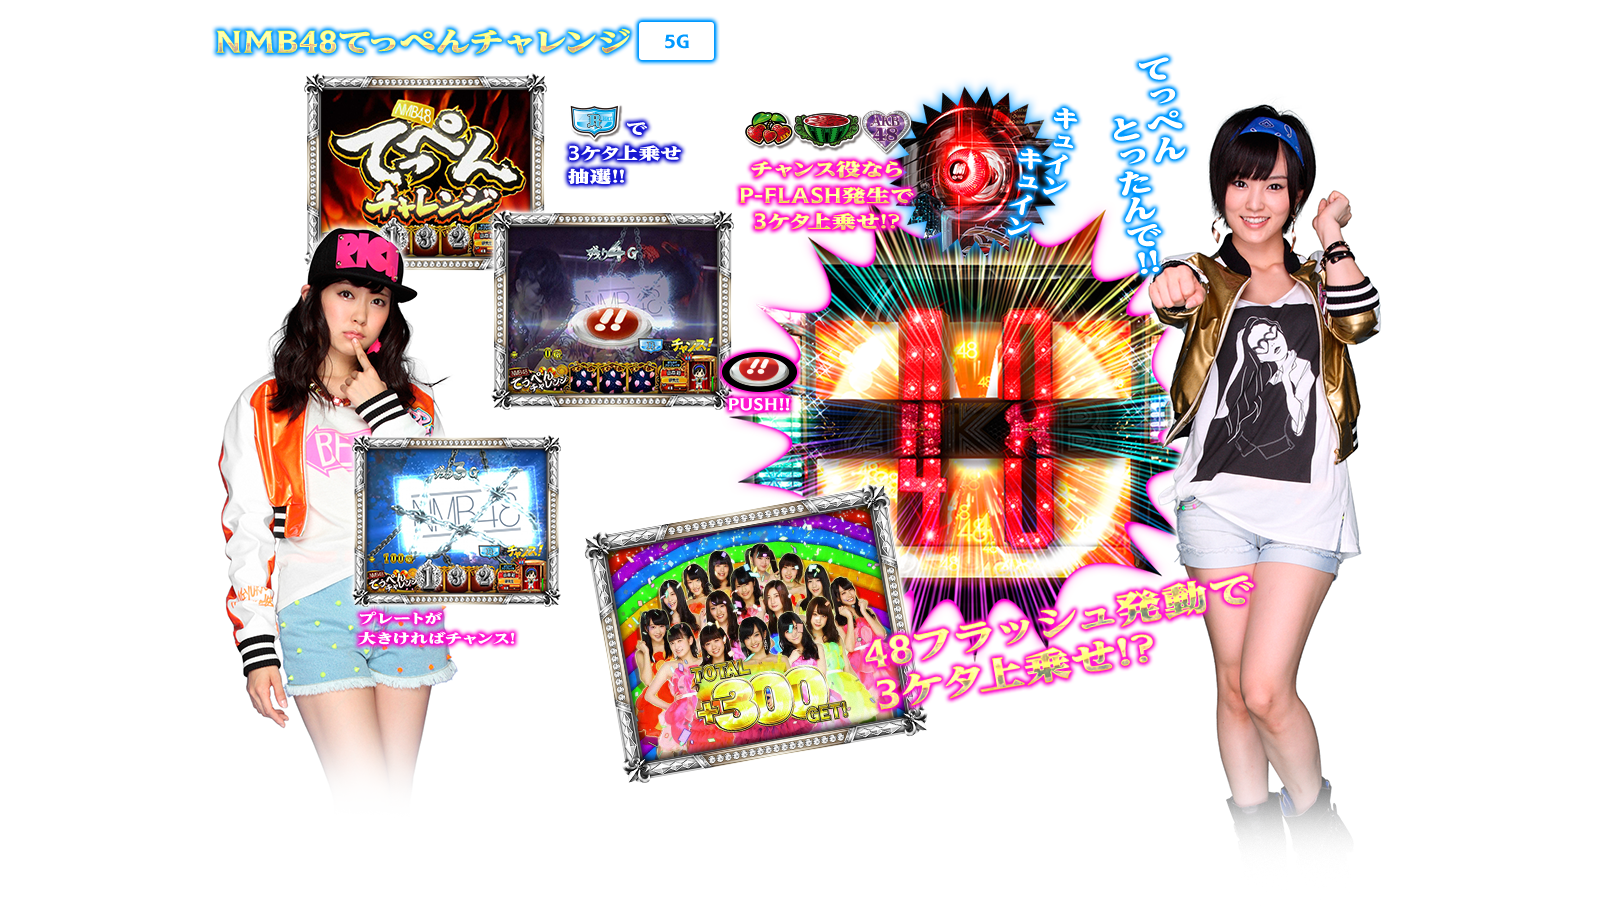 ぱちスロAKB48 バラの儀式の演出紹介。神曲RUSHのSKE48下克上チャンス/NMB48てっぺんチャレンジです。AKB48ファン、スロット初心者、ヘビーユーザーまで誰もが楽しめるDDスペックで登場!!